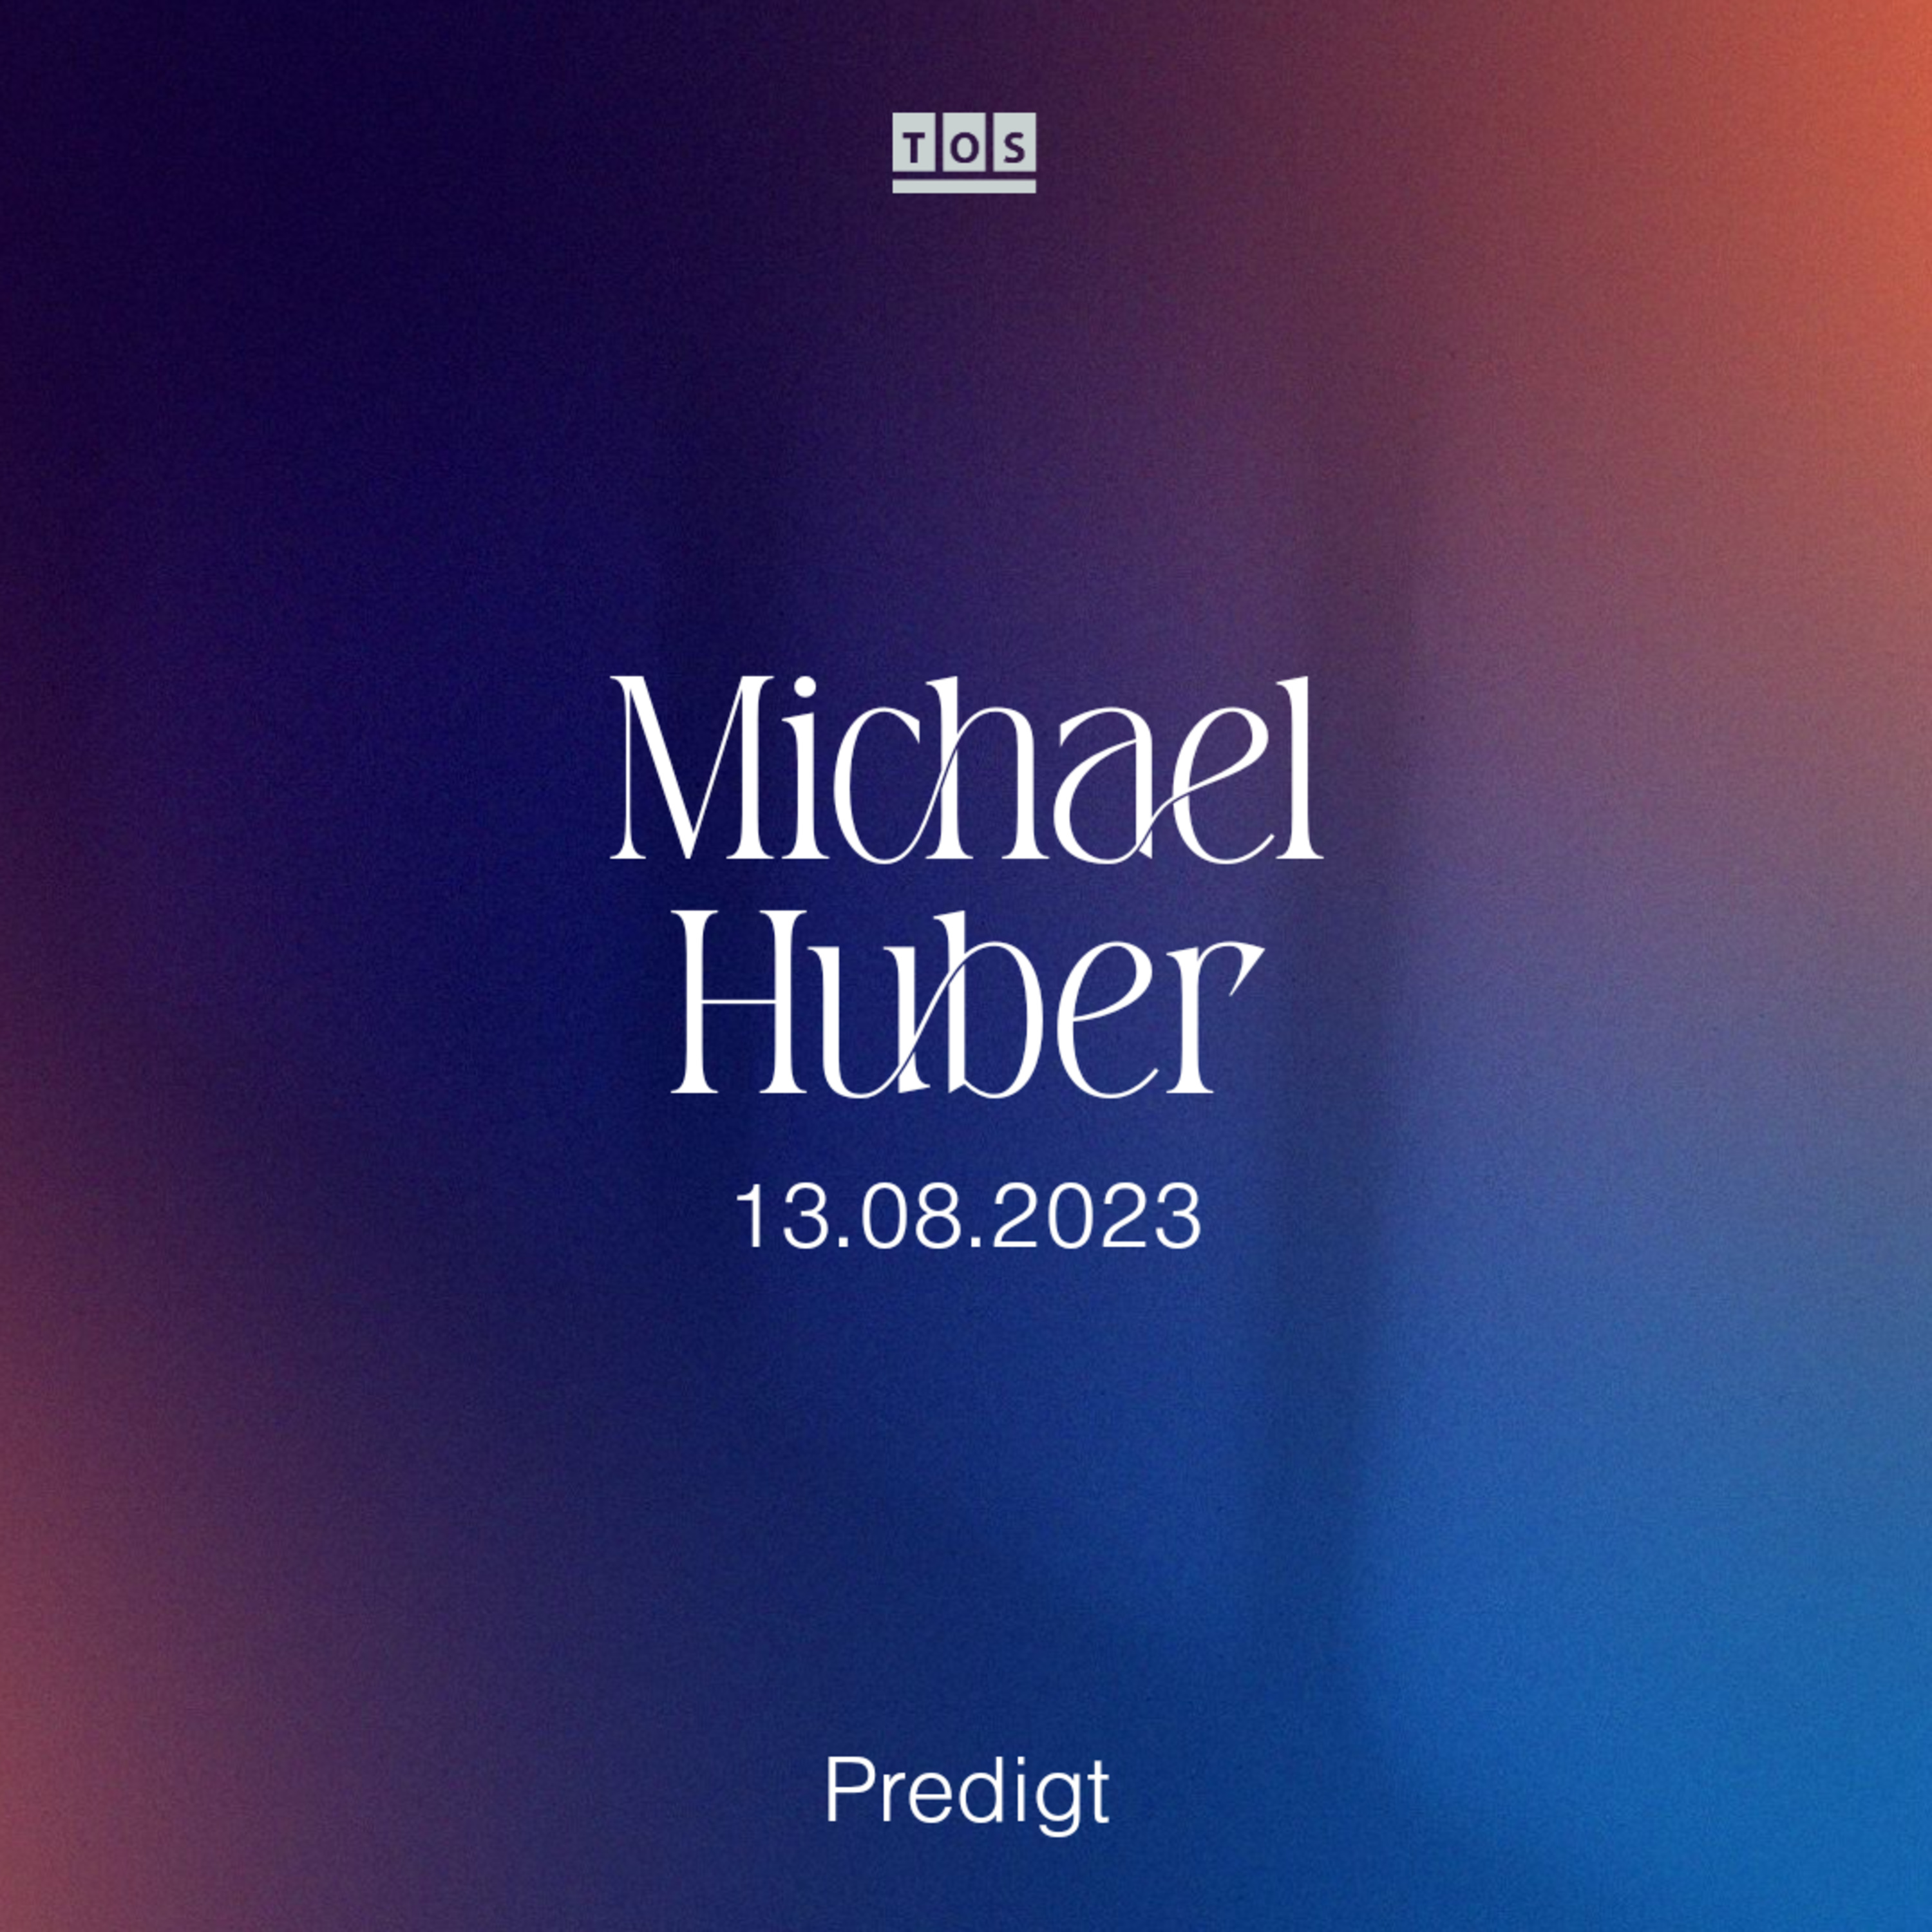 Michael Huber - 13.08.2023 hero artwork